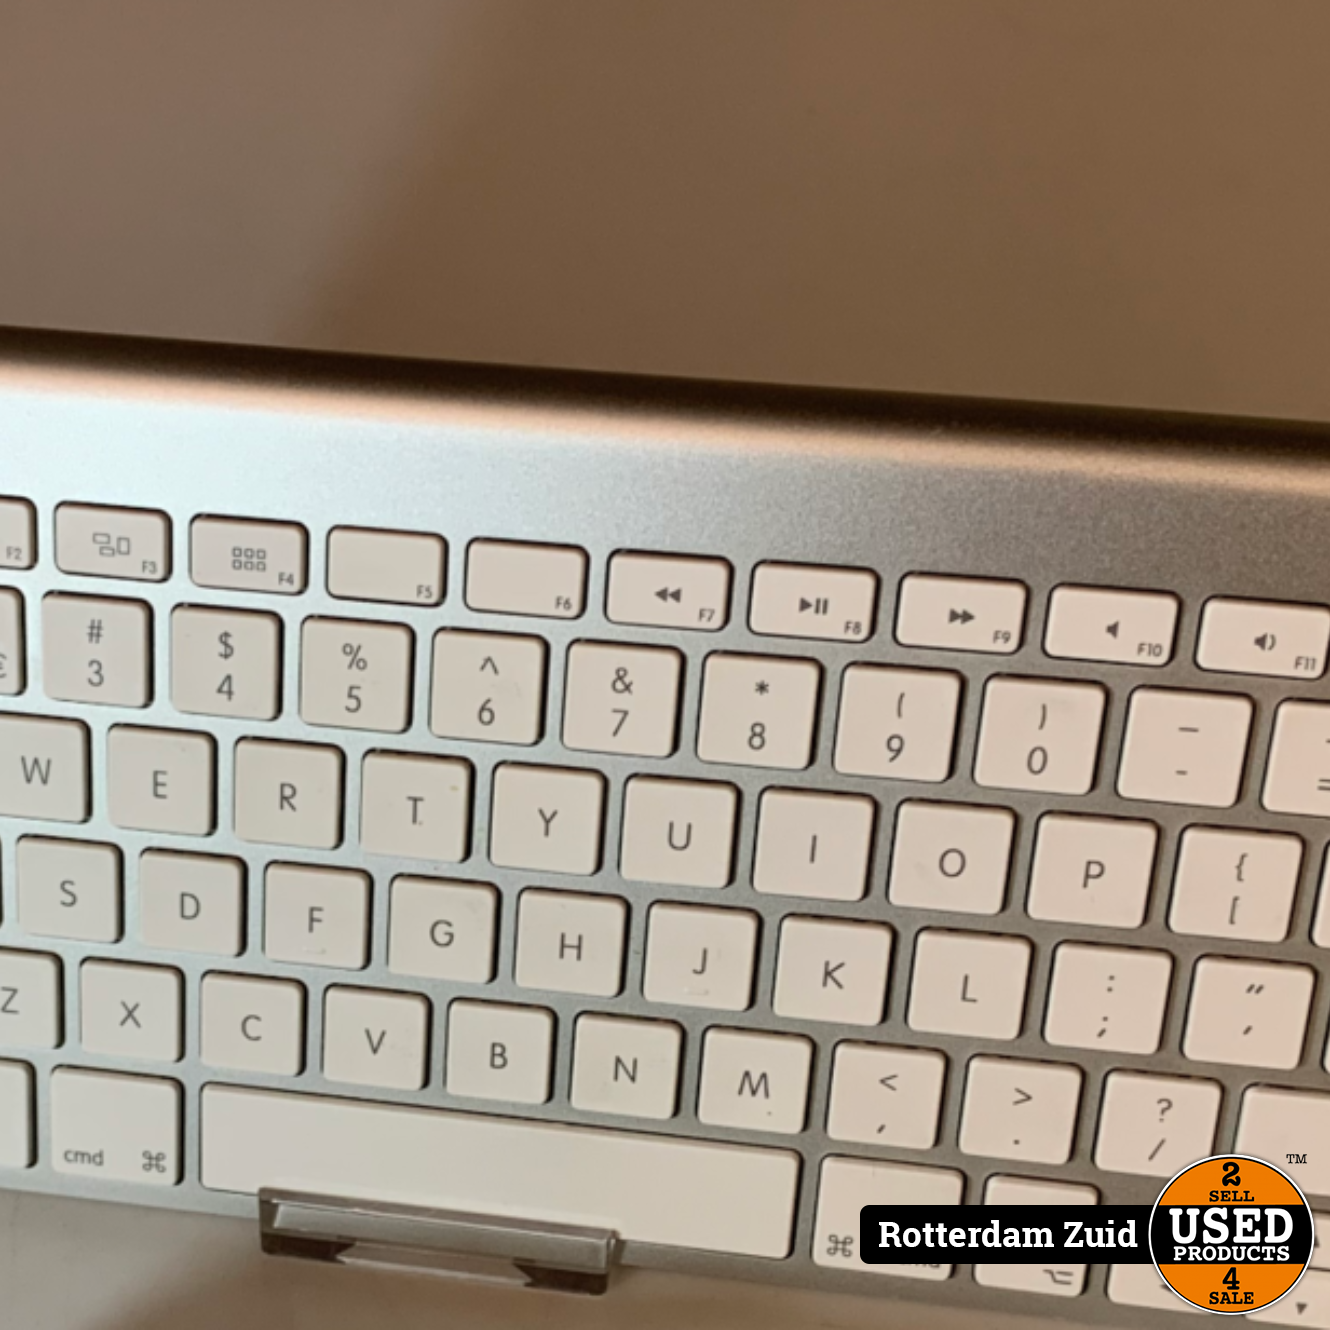 Doe alles met mijn kracht kennisgeving metalen Apple Magic Keyboard || Met garantie || - Used Products Rotterdam Zuid